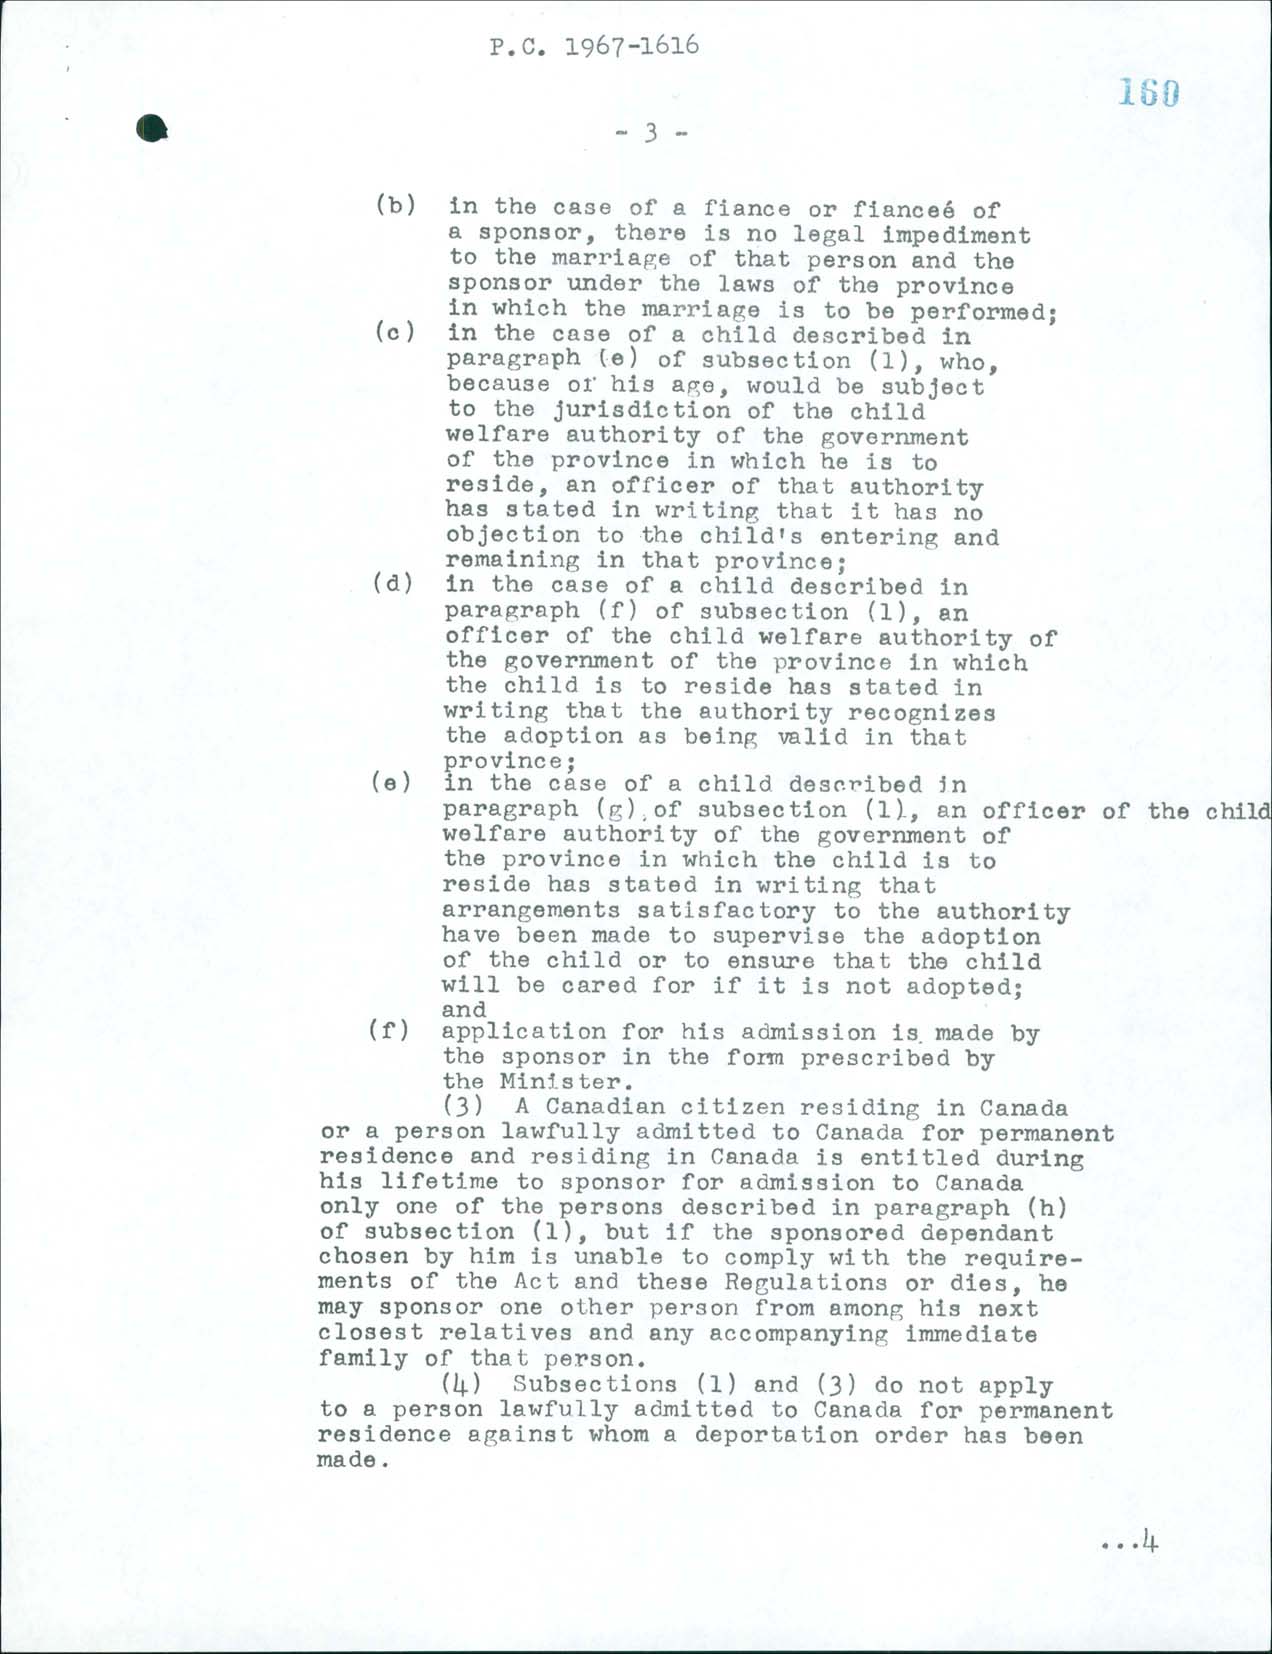 Page 3 Règlement sur l’immigration, Décret du Conseil CP 1967-1616, 1967